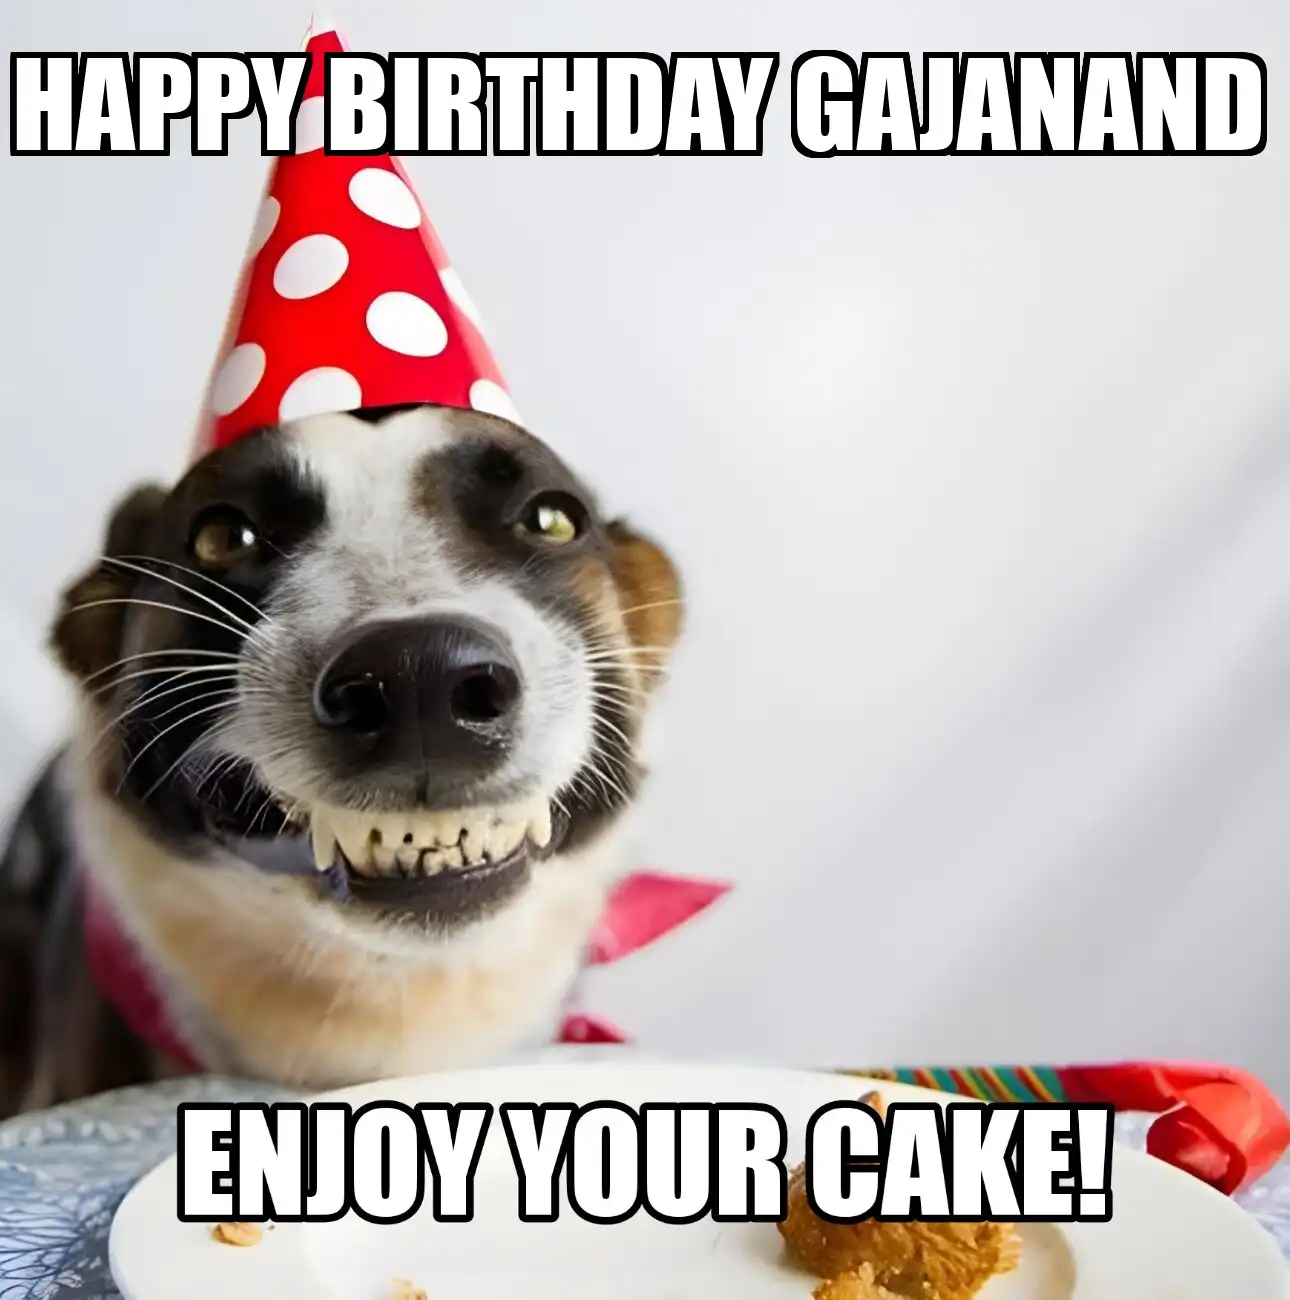 Happy Birthday Gajanand Enjoy Your Cake Dog Meme